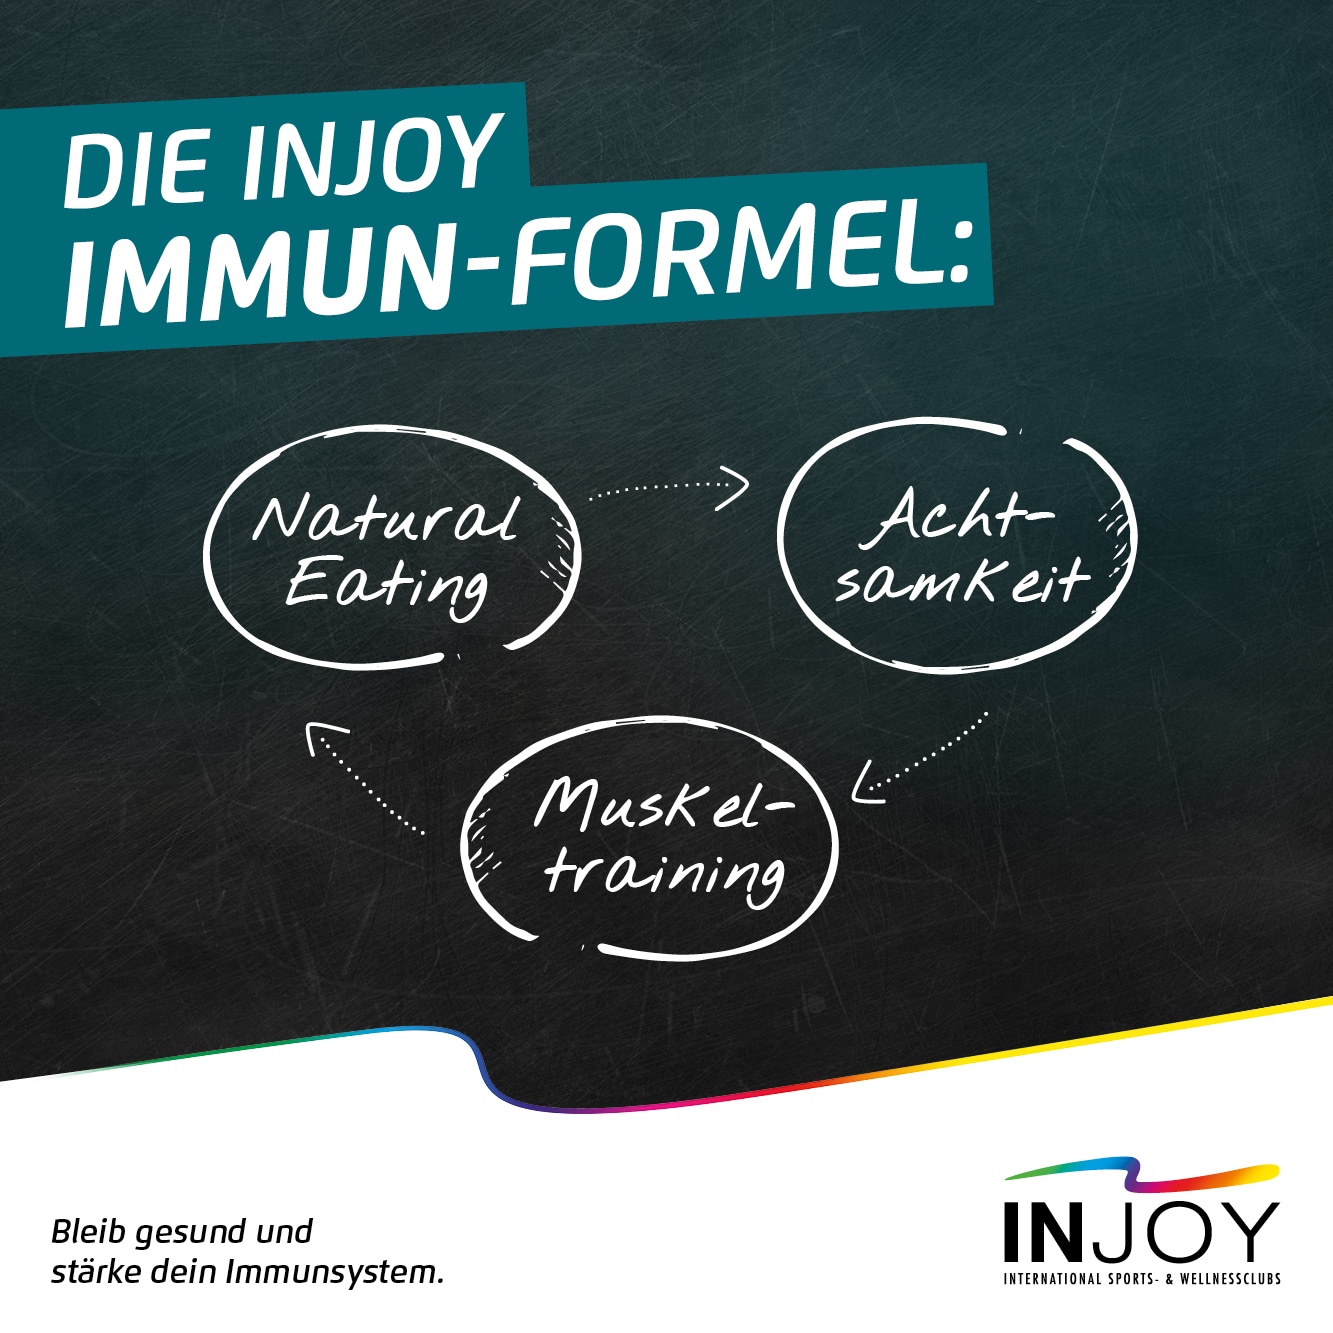 Die INJOY Immun-Formel